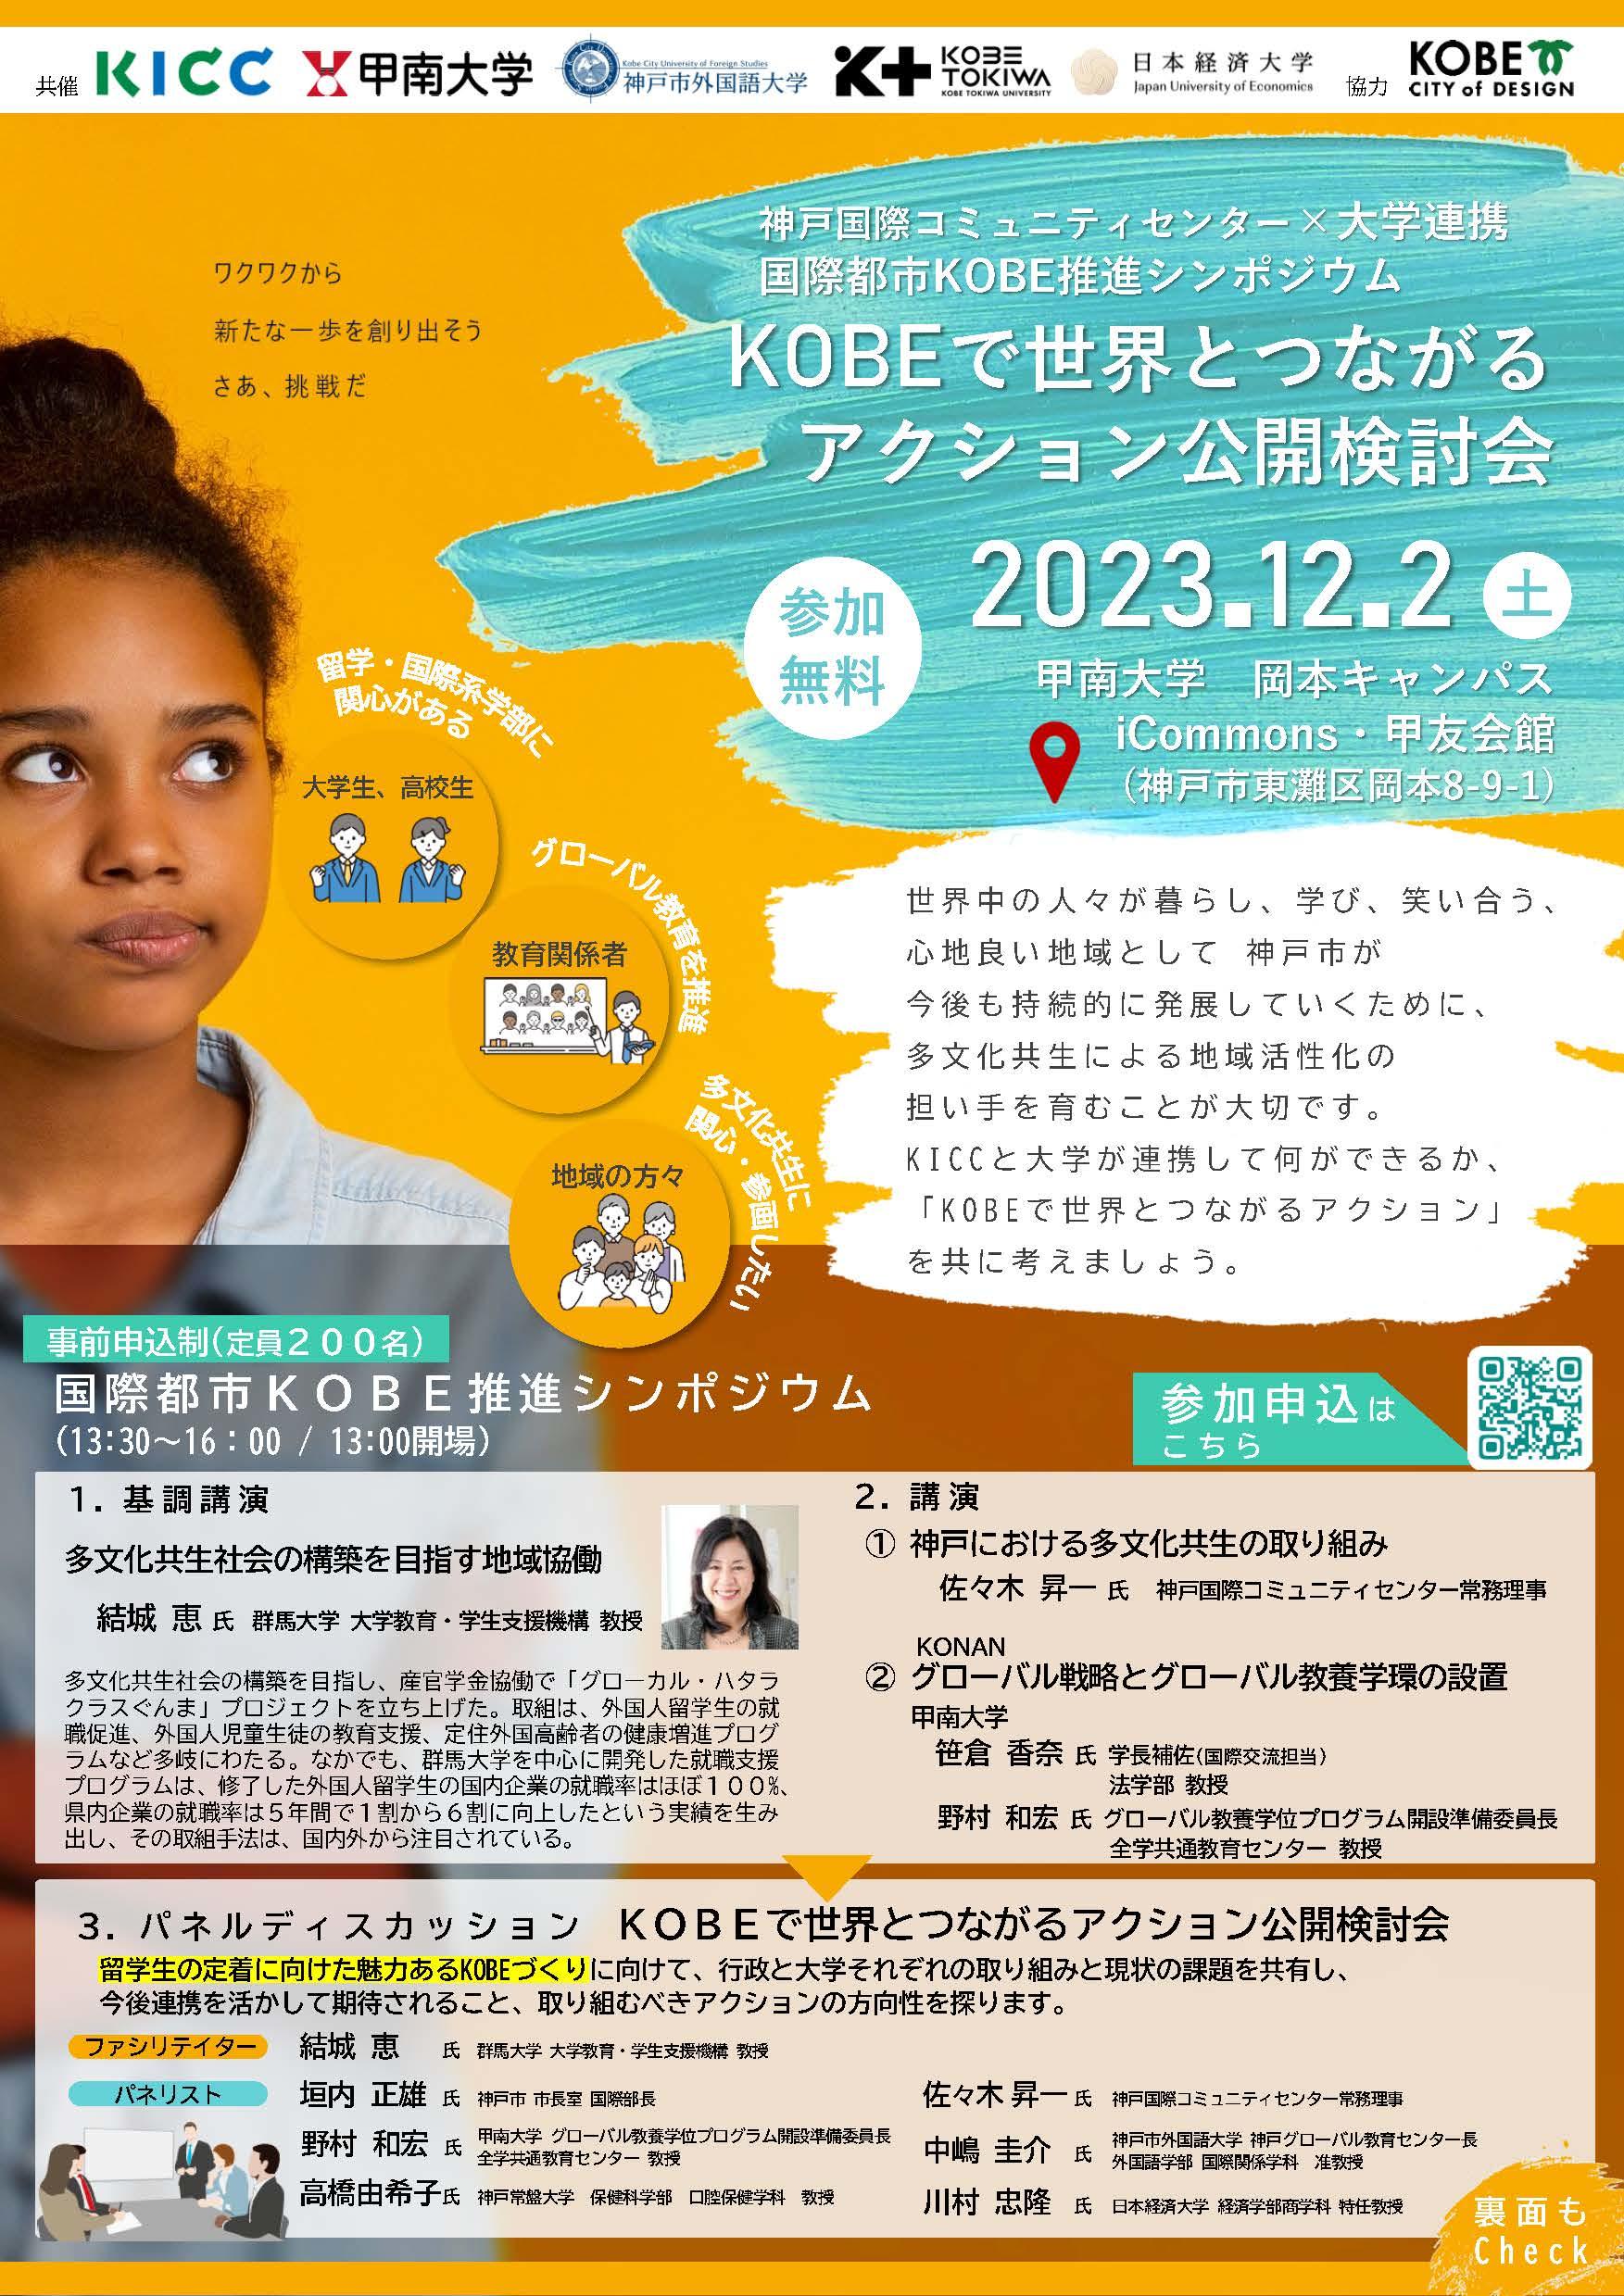 2023年12月、甲南大学にて「神戸国際コミュニティセンター(KICC)×大学連携 国際都市KOBE推進シンポジウム」を開催--国際都市神戸のさらなる魅力化に向けたアクションを検討するパネルディスカッション等を実施--